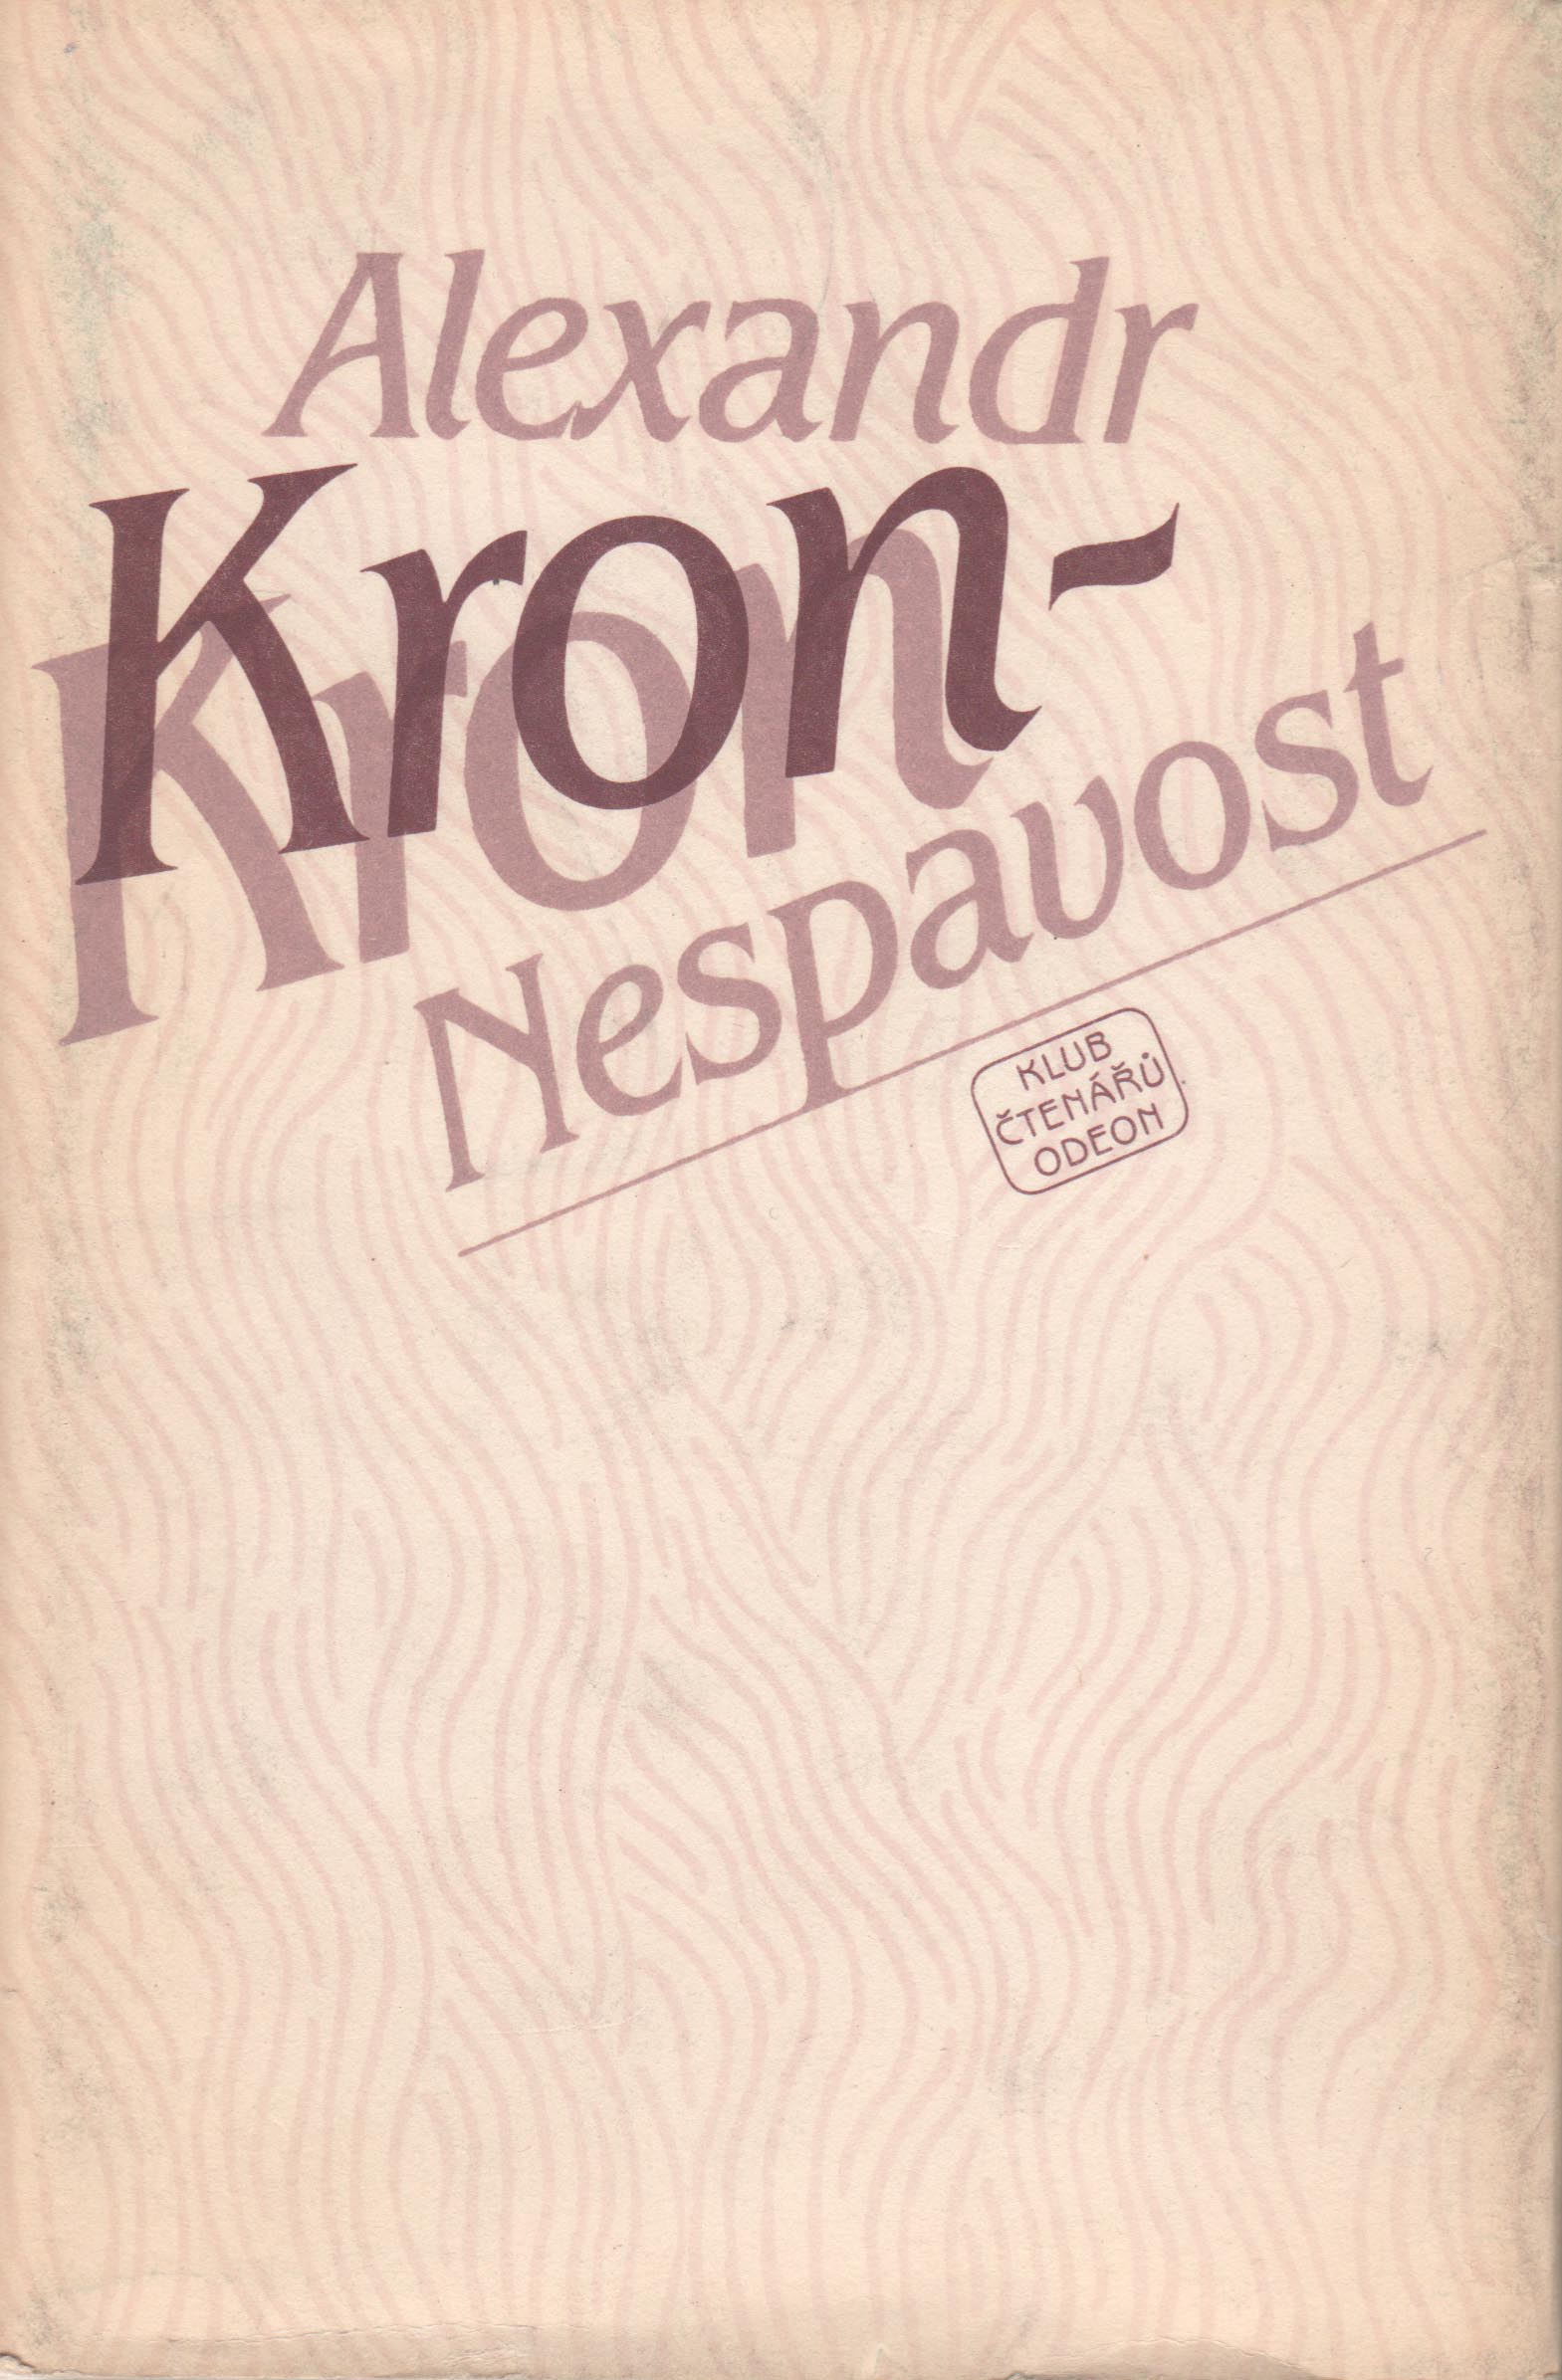 Nespavost (Alexander Kron)